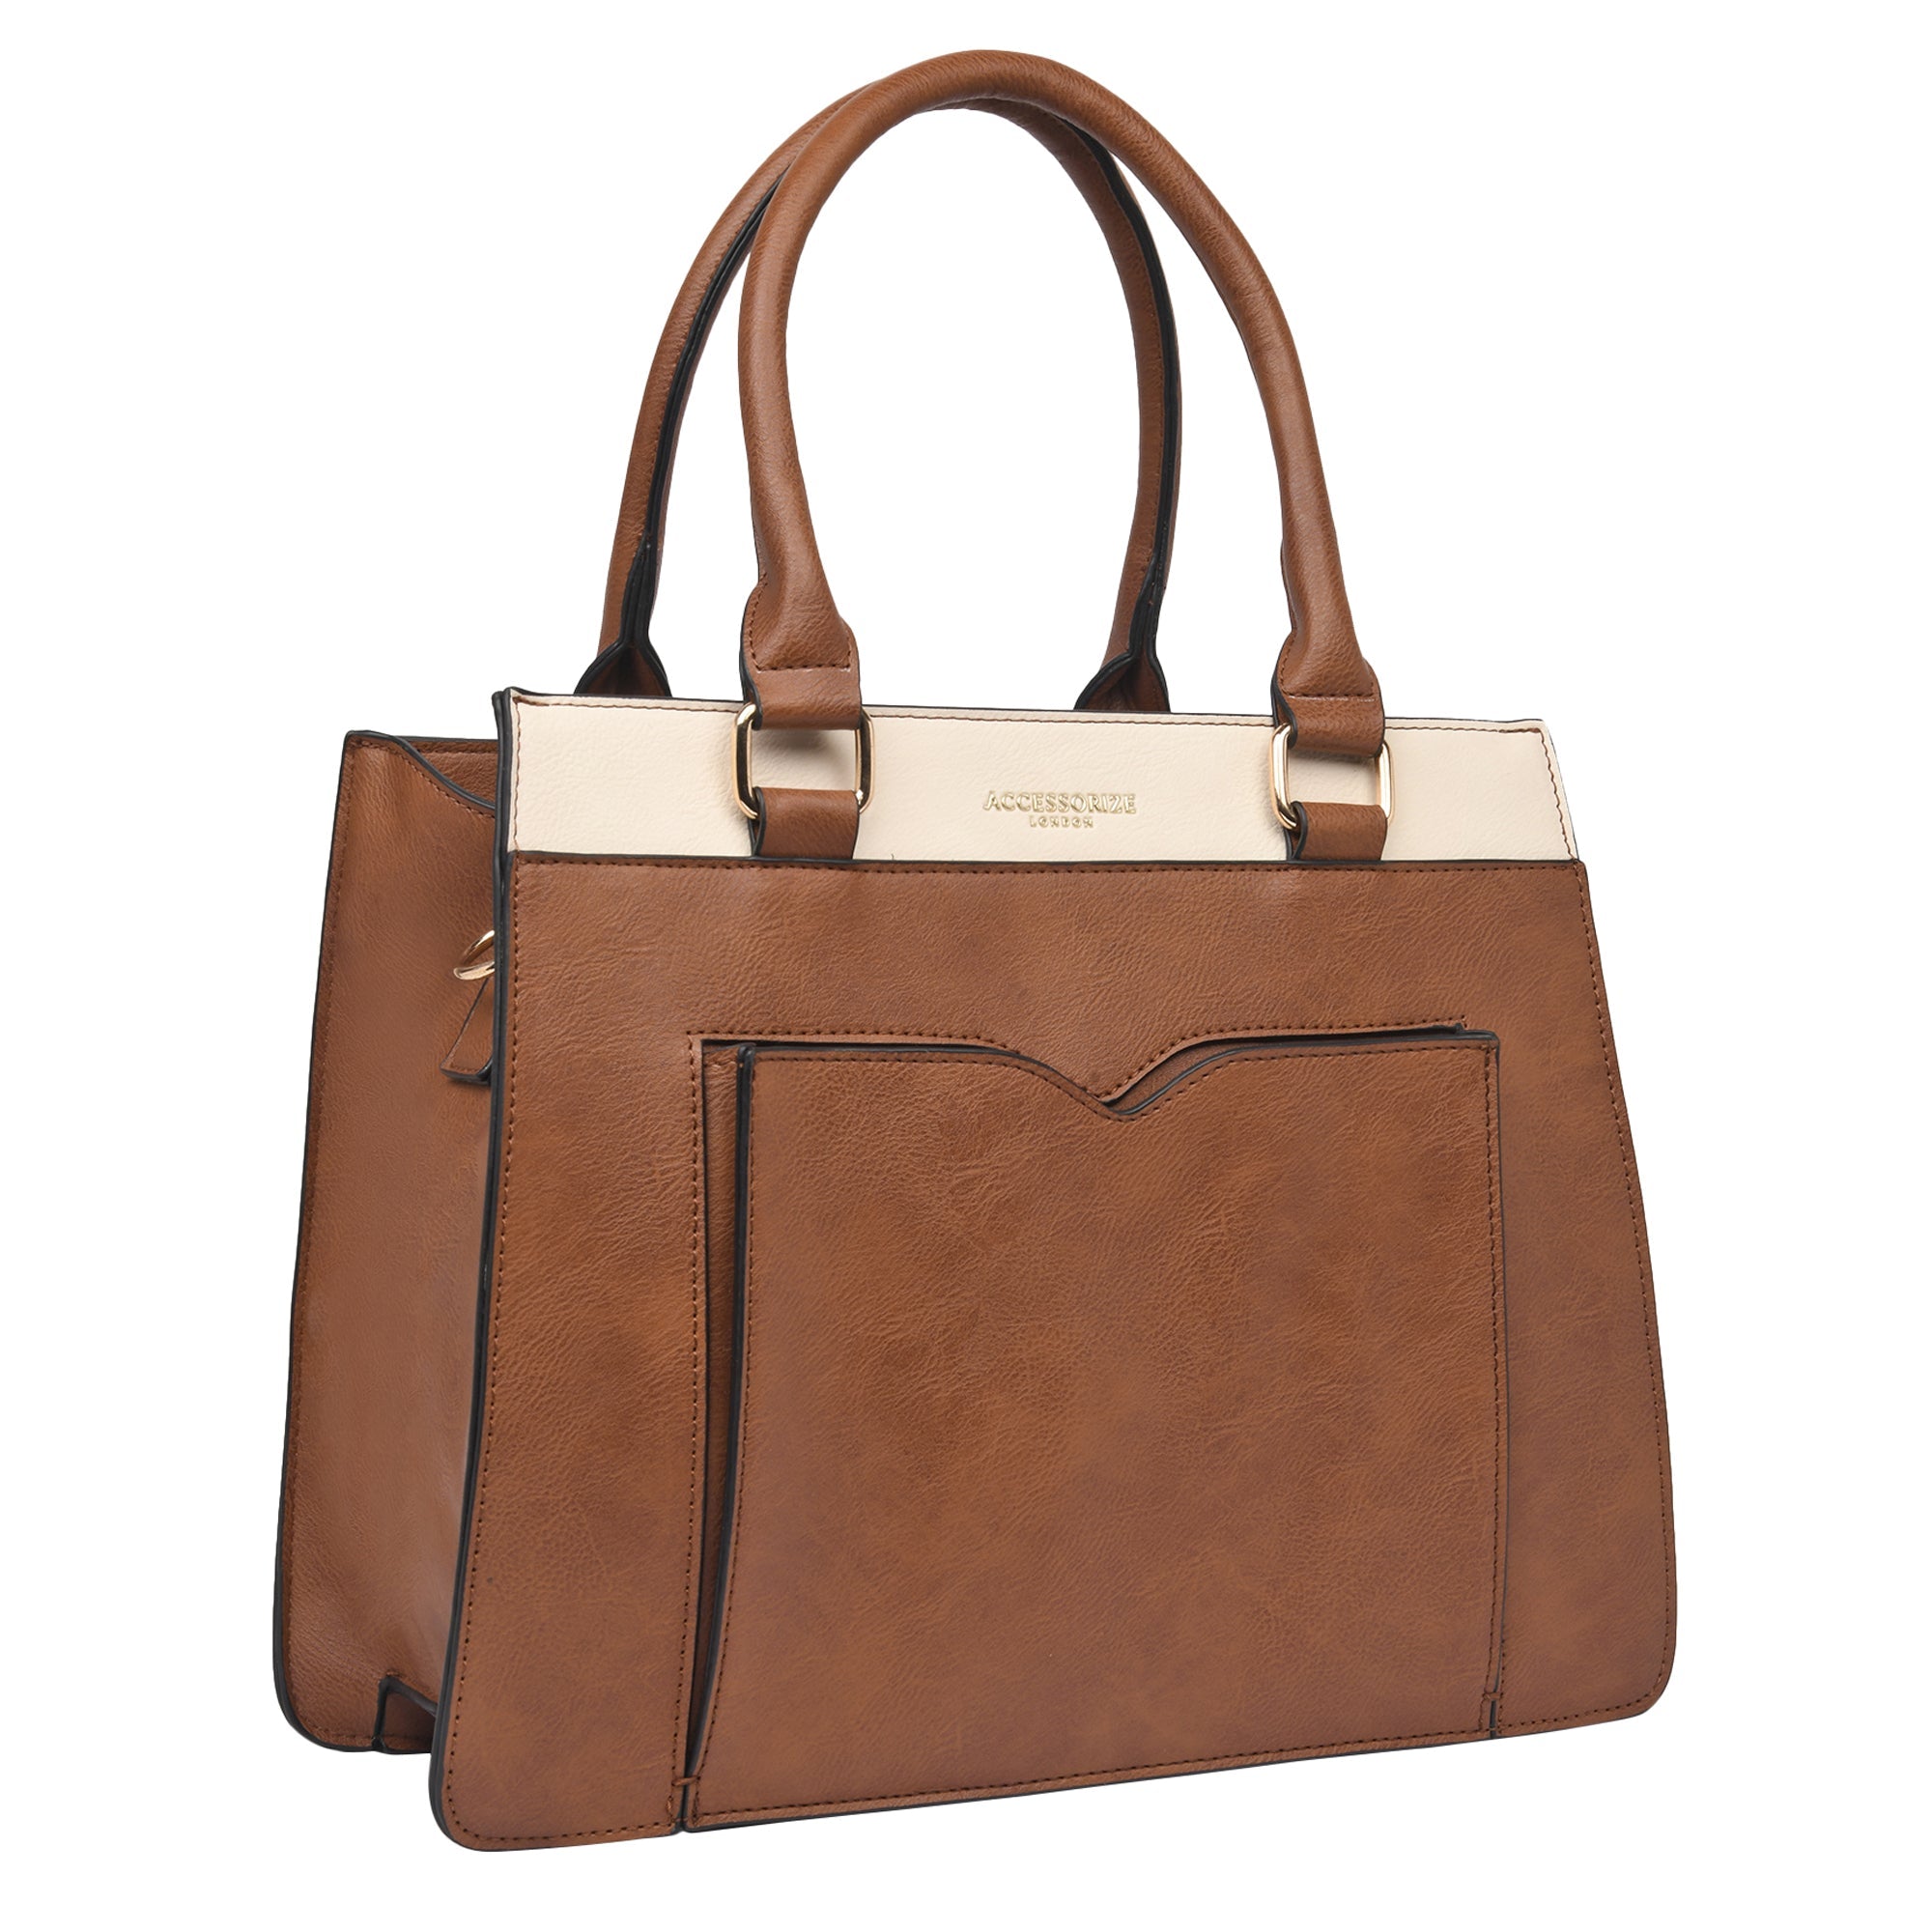 Accessorize London Women's Faux Leather Tan Athena Color Block handheld Bag